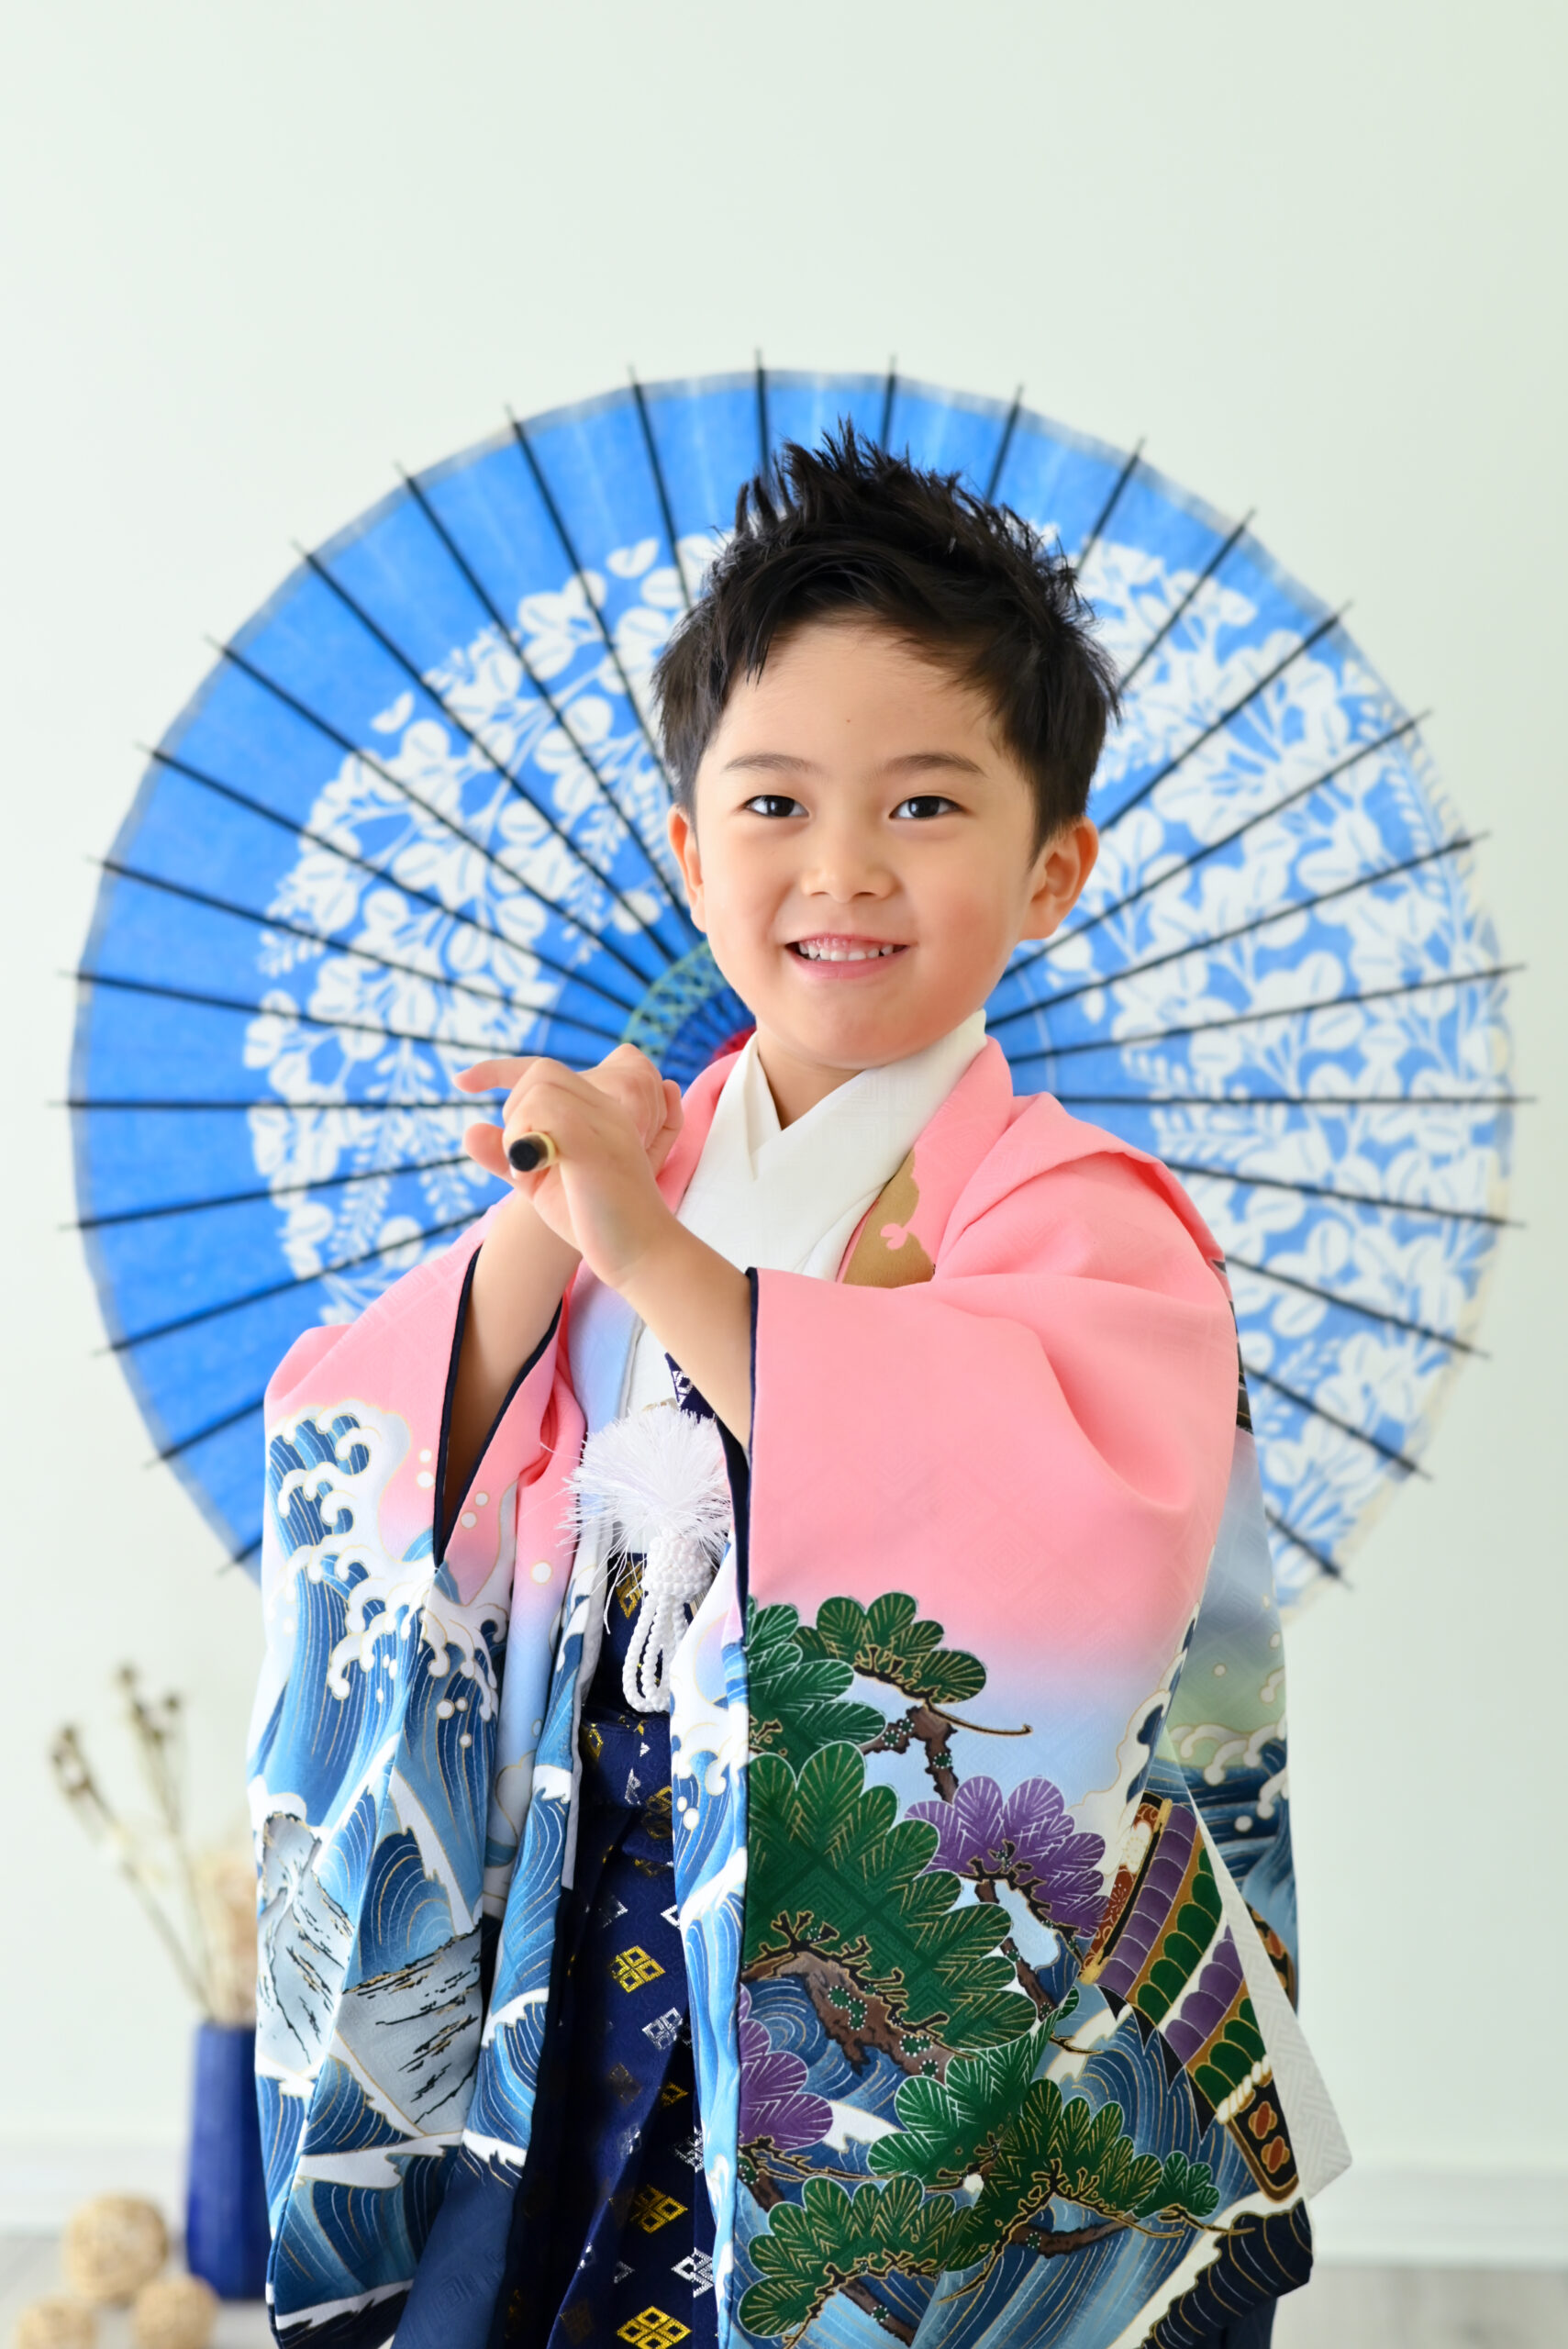 ピンクの袴を着た5歳男の子が青い傘を持っている